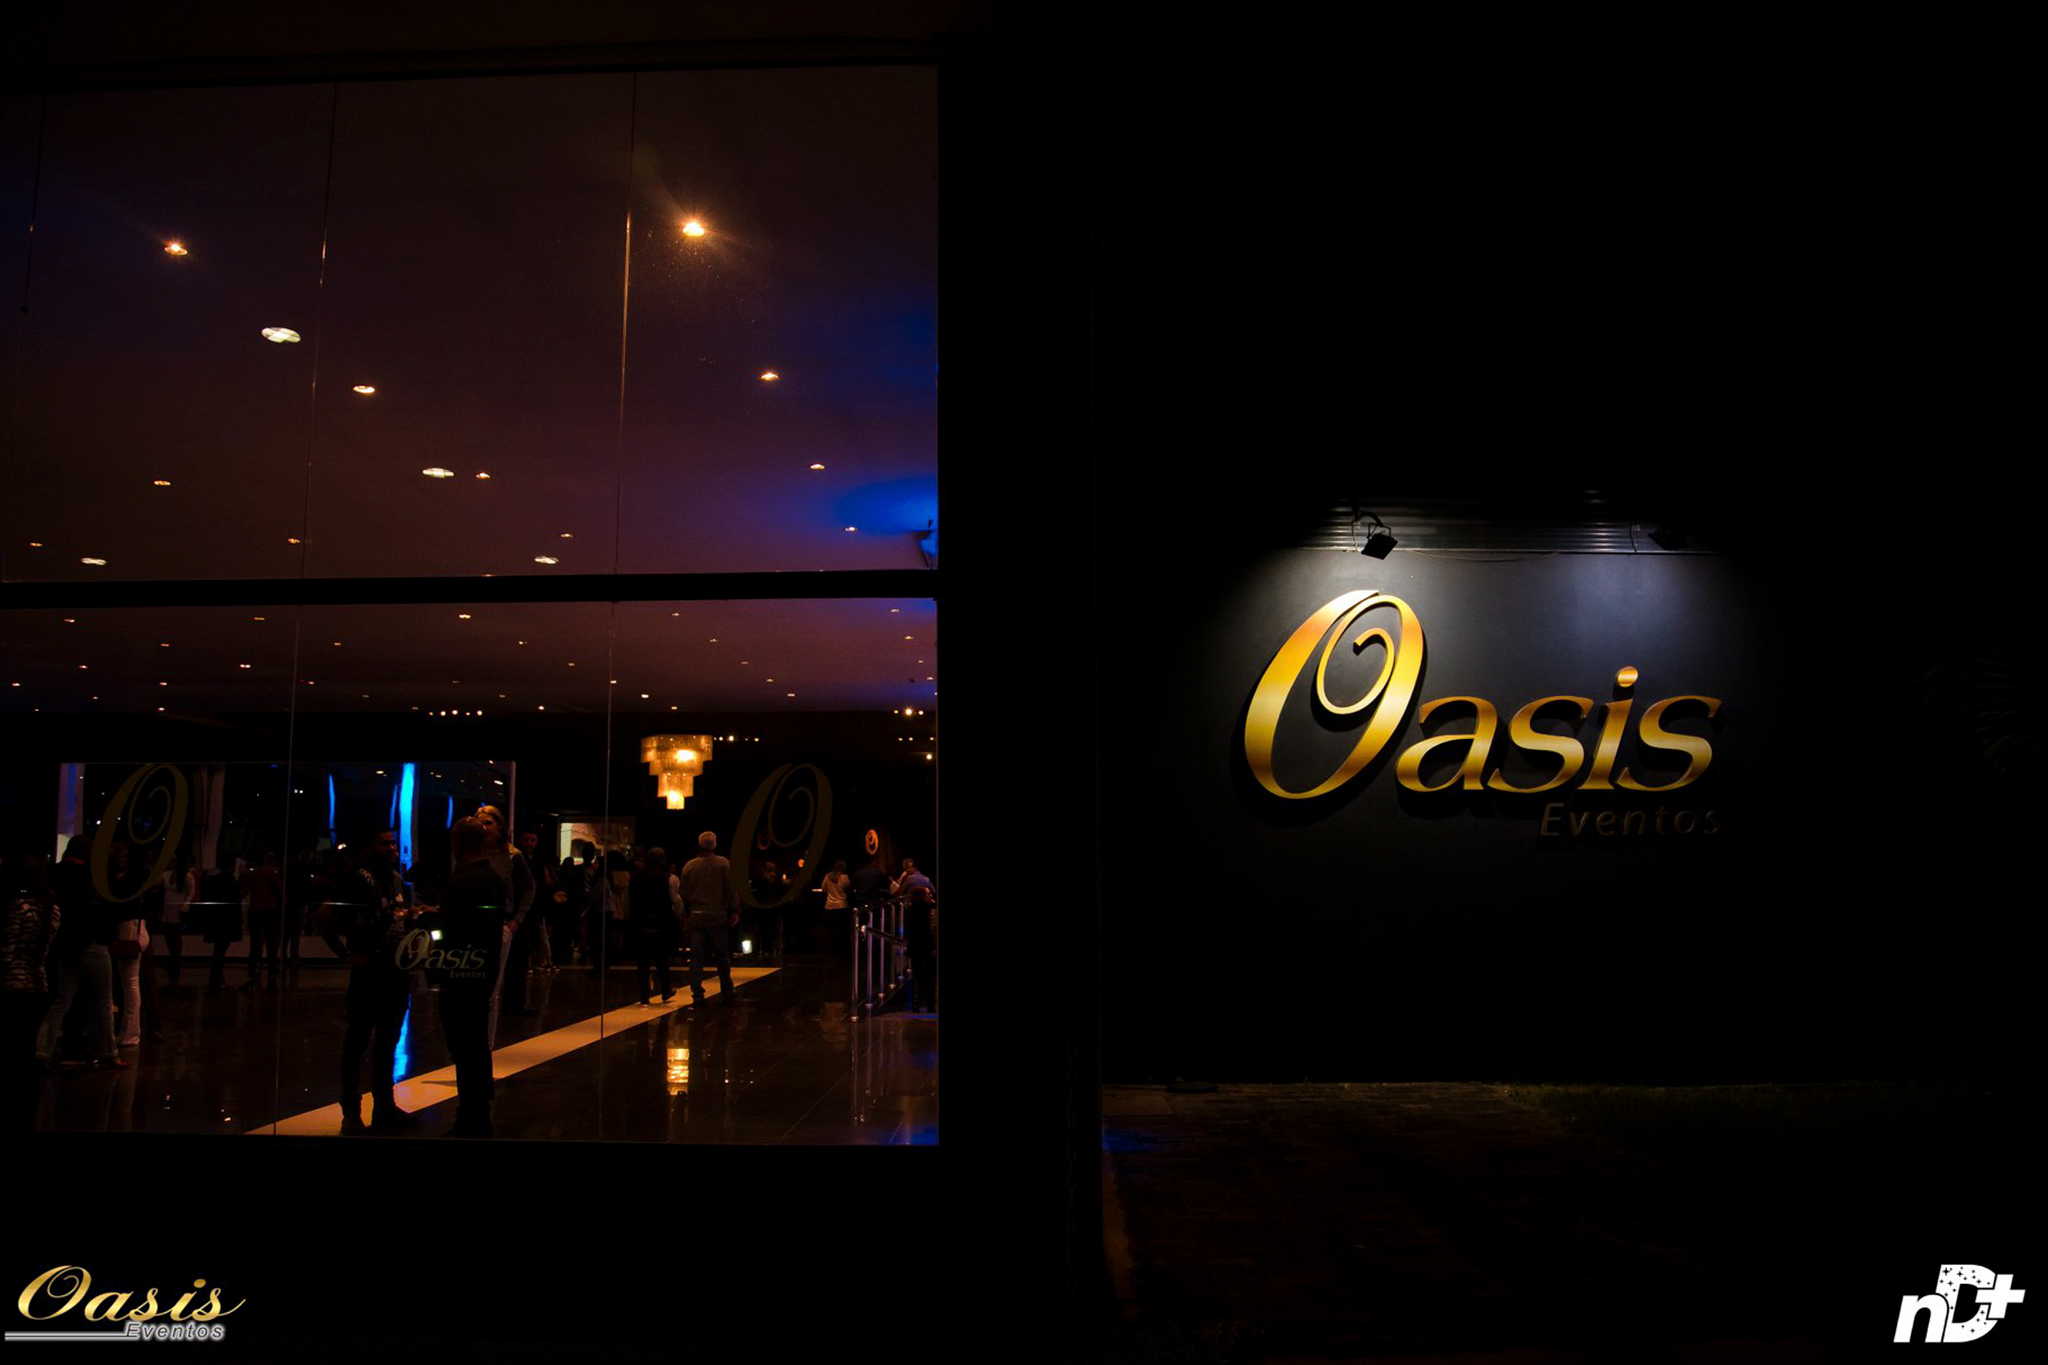 Oasis Eventos - A Oasis Eventos e a Rádio Clube FM trazem a maior